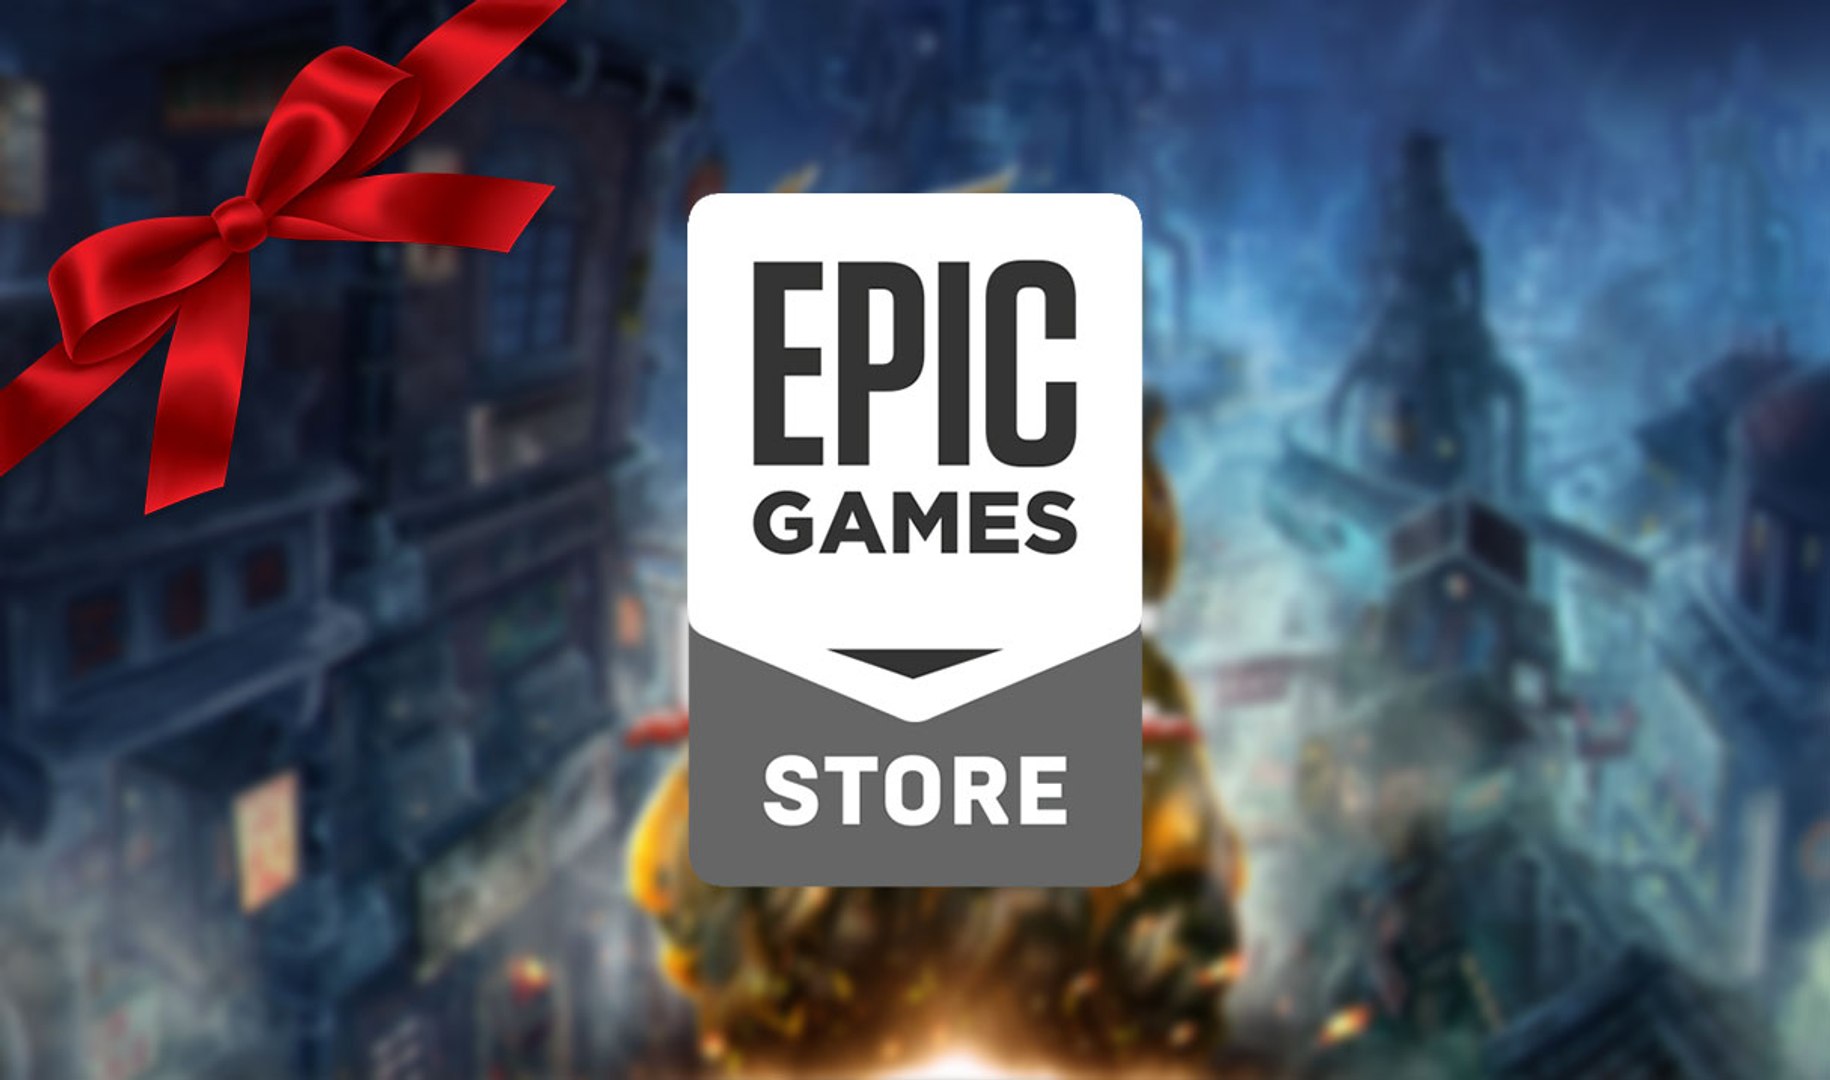 epic games store - Página 3 de 5 - Olhar Digital